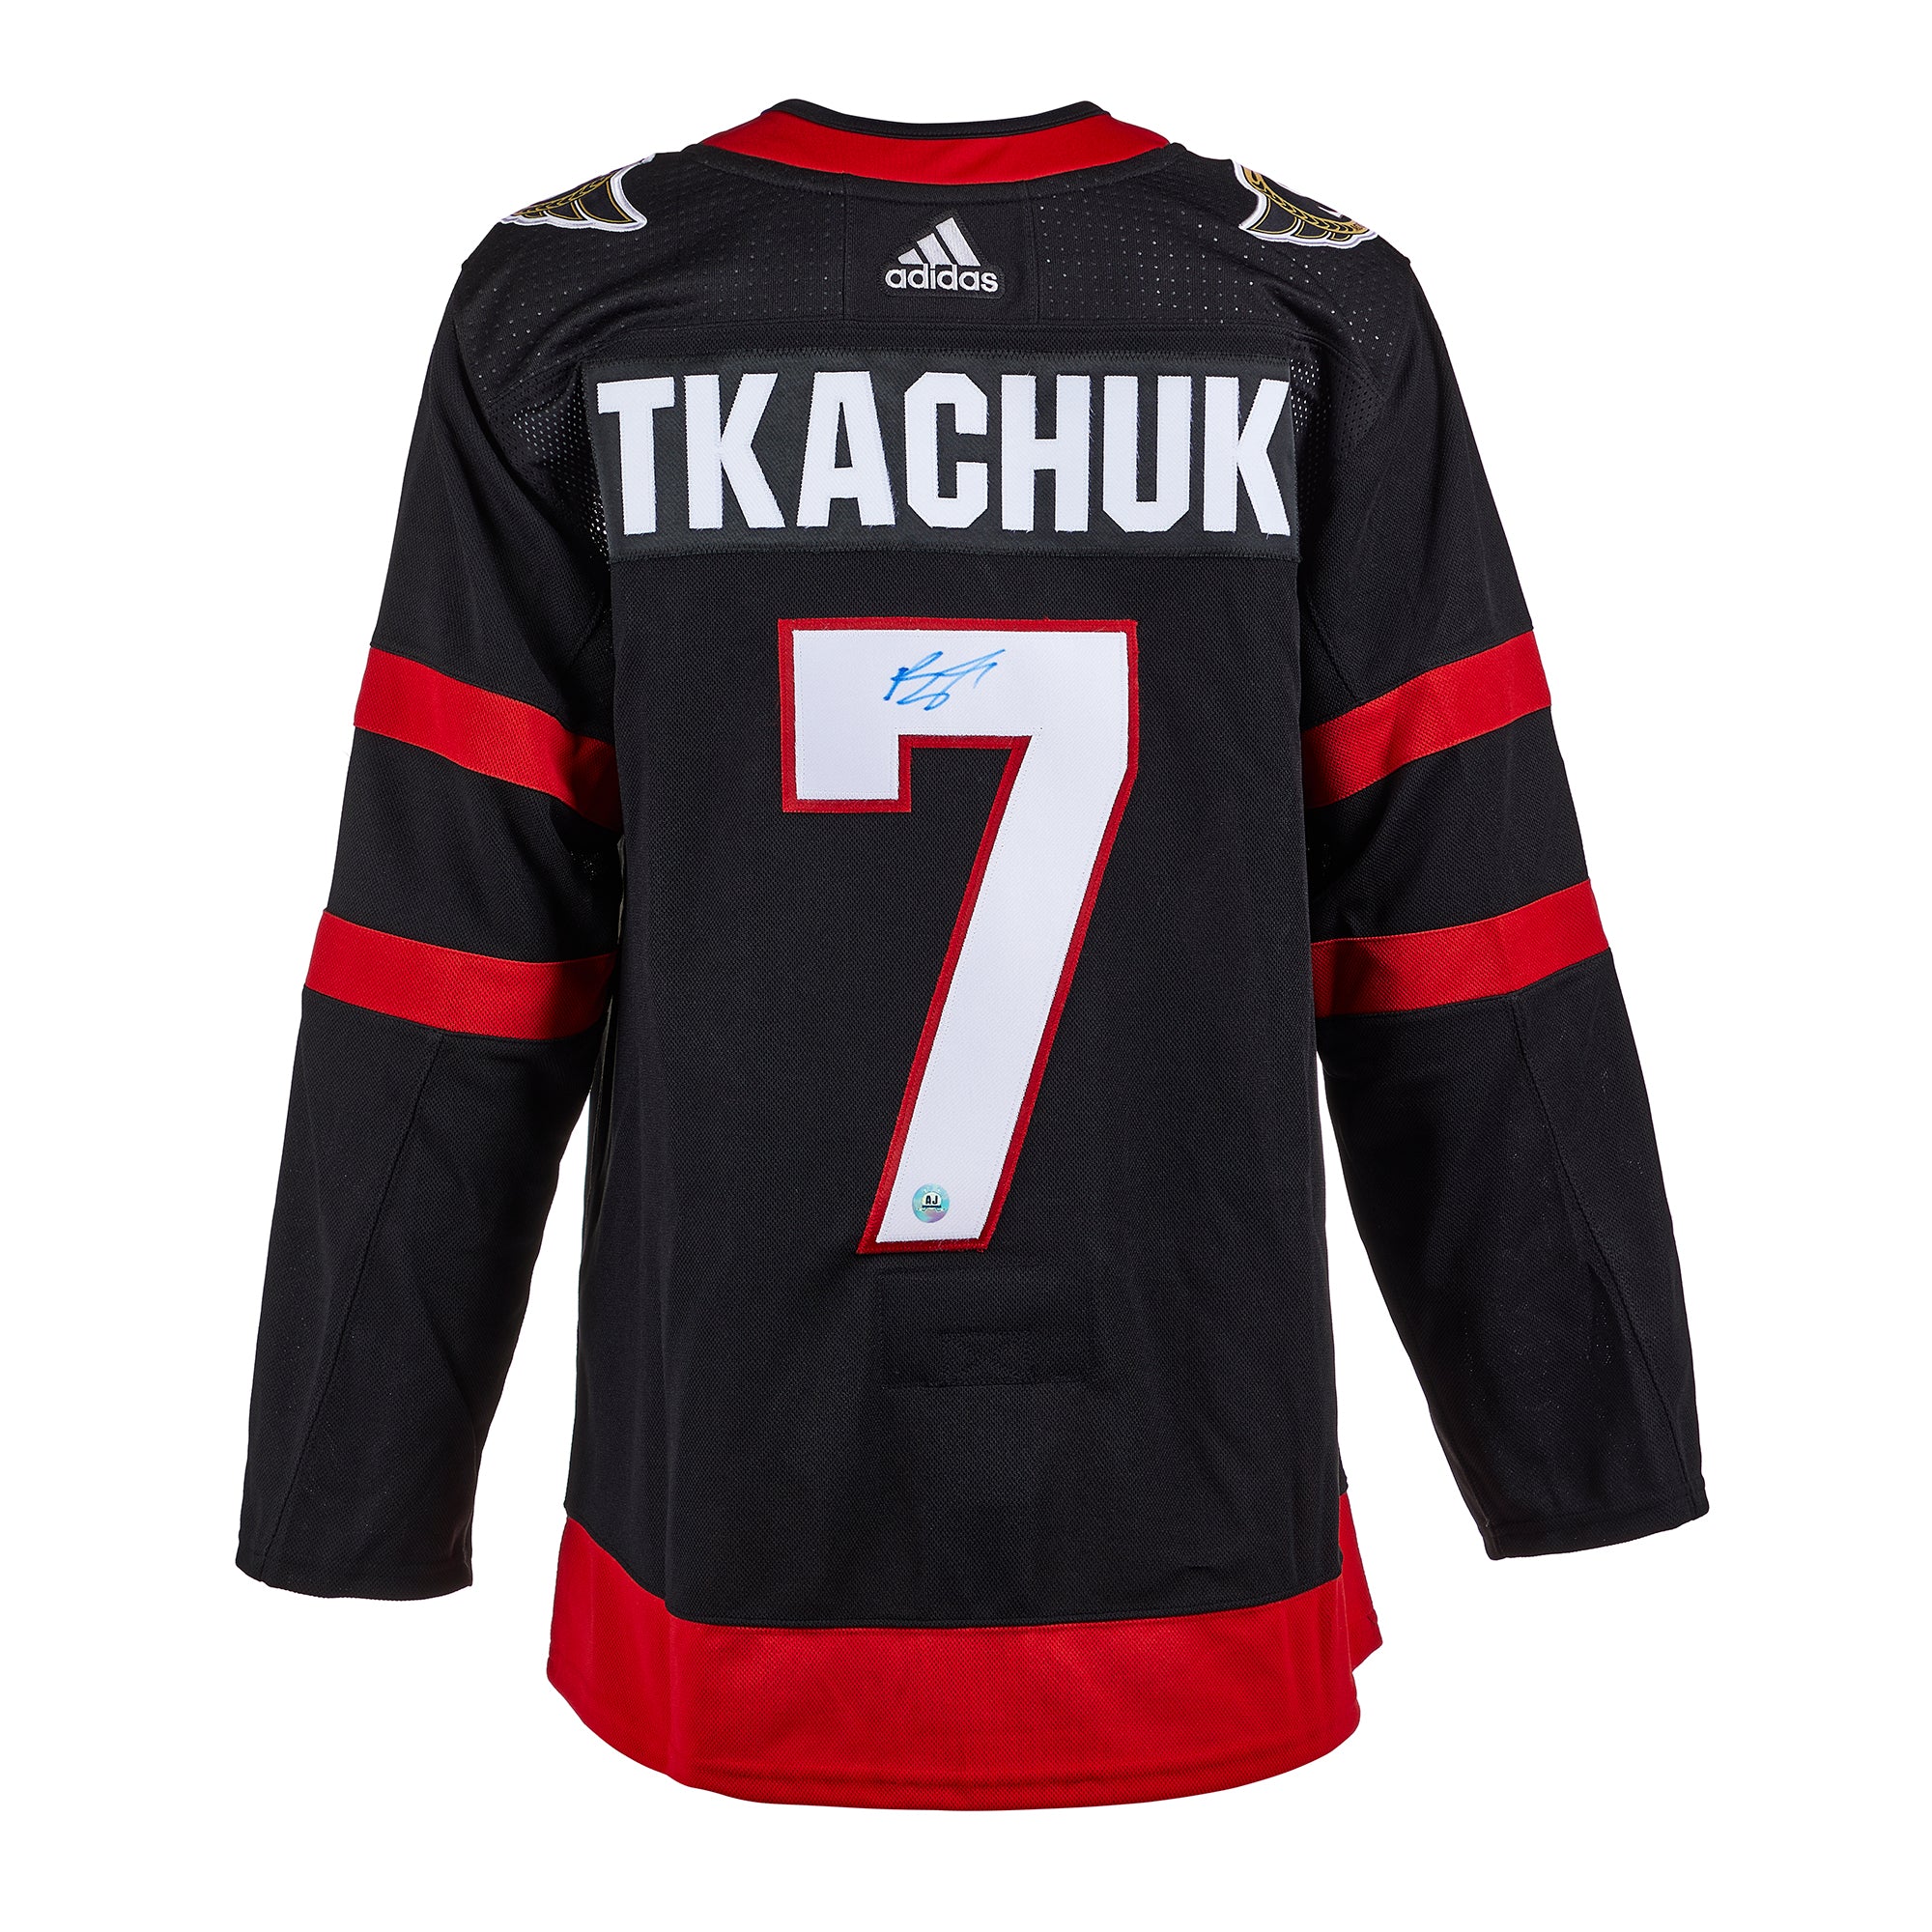 Brady Tkachuk Ottawa Senators Signed Reverse Retro Adidas Jersey